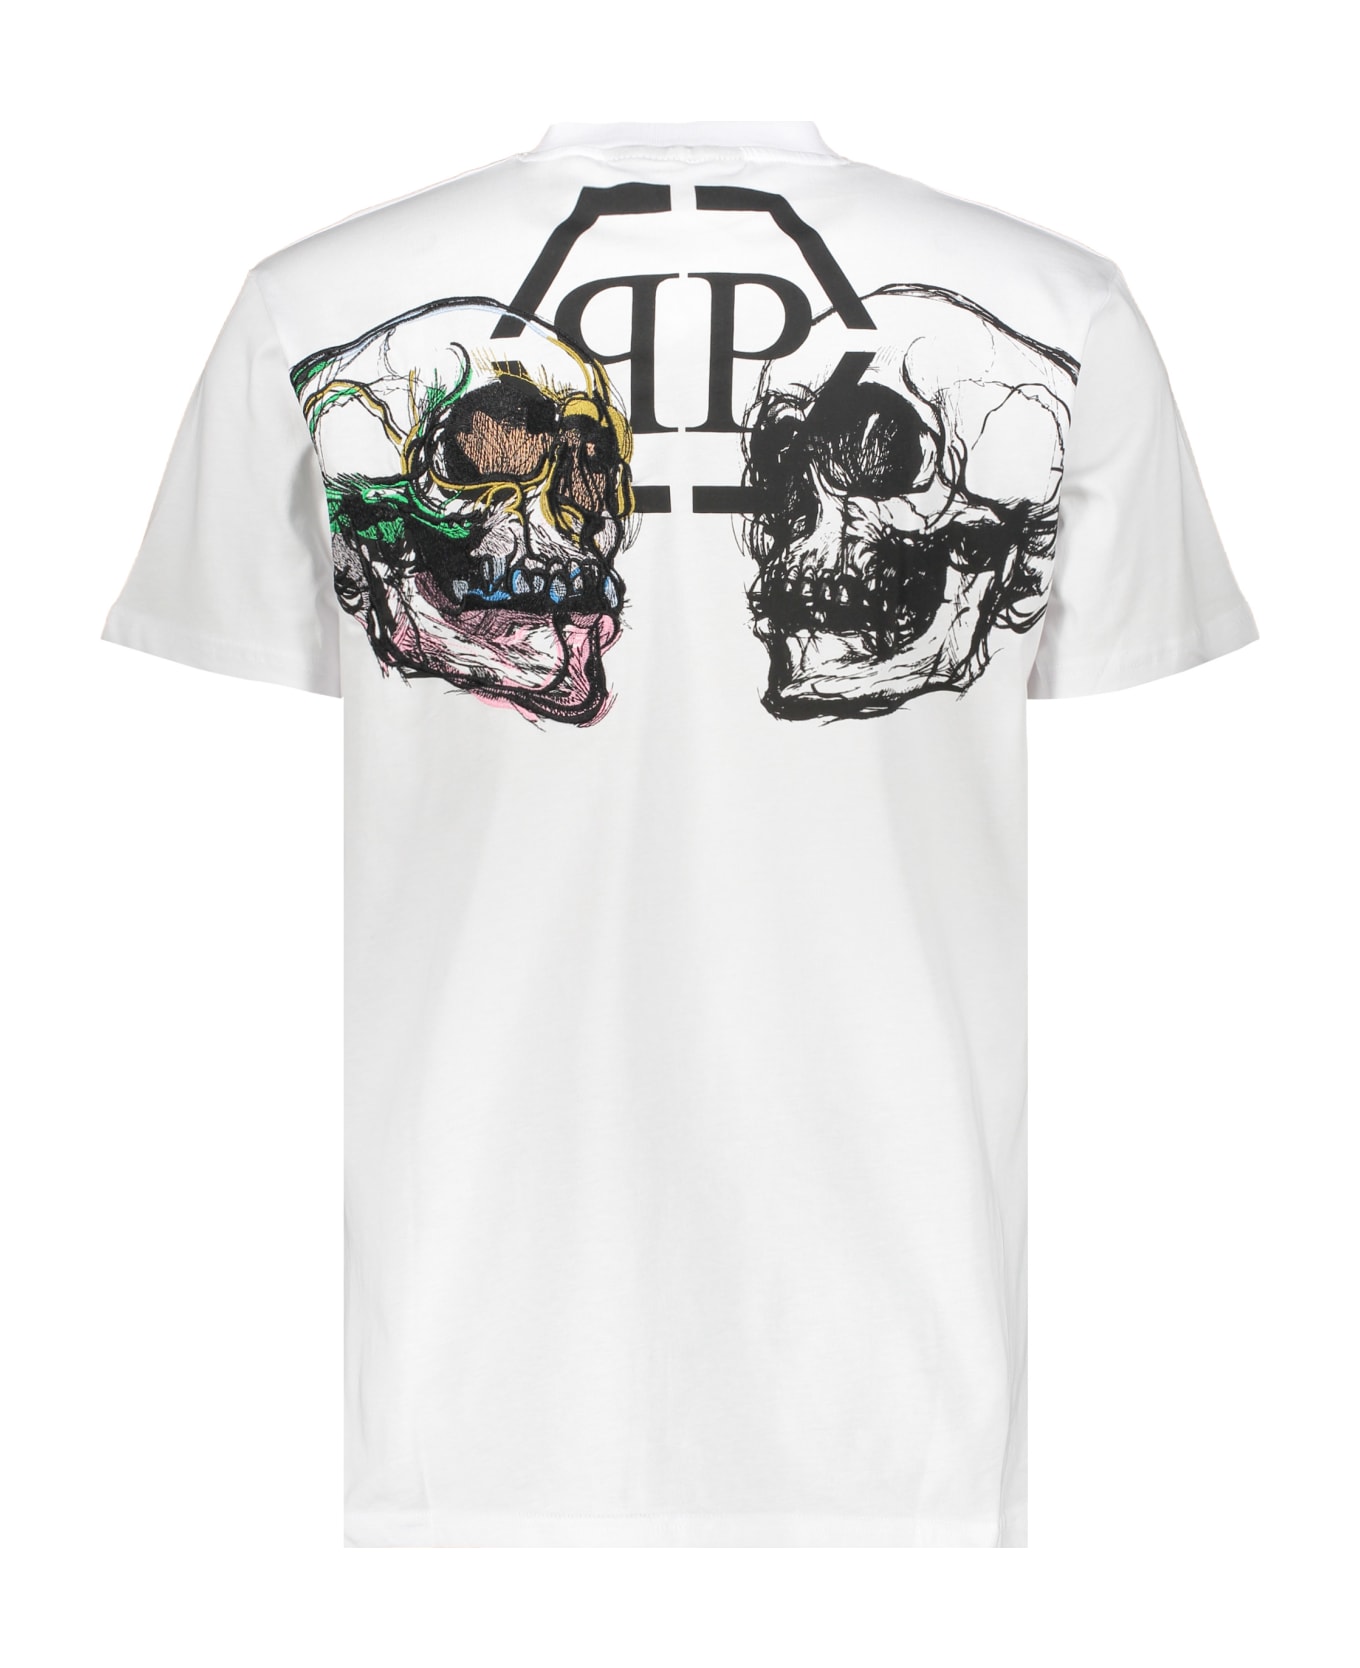 Philipp Plein Cotton T-shirt - White シャツ